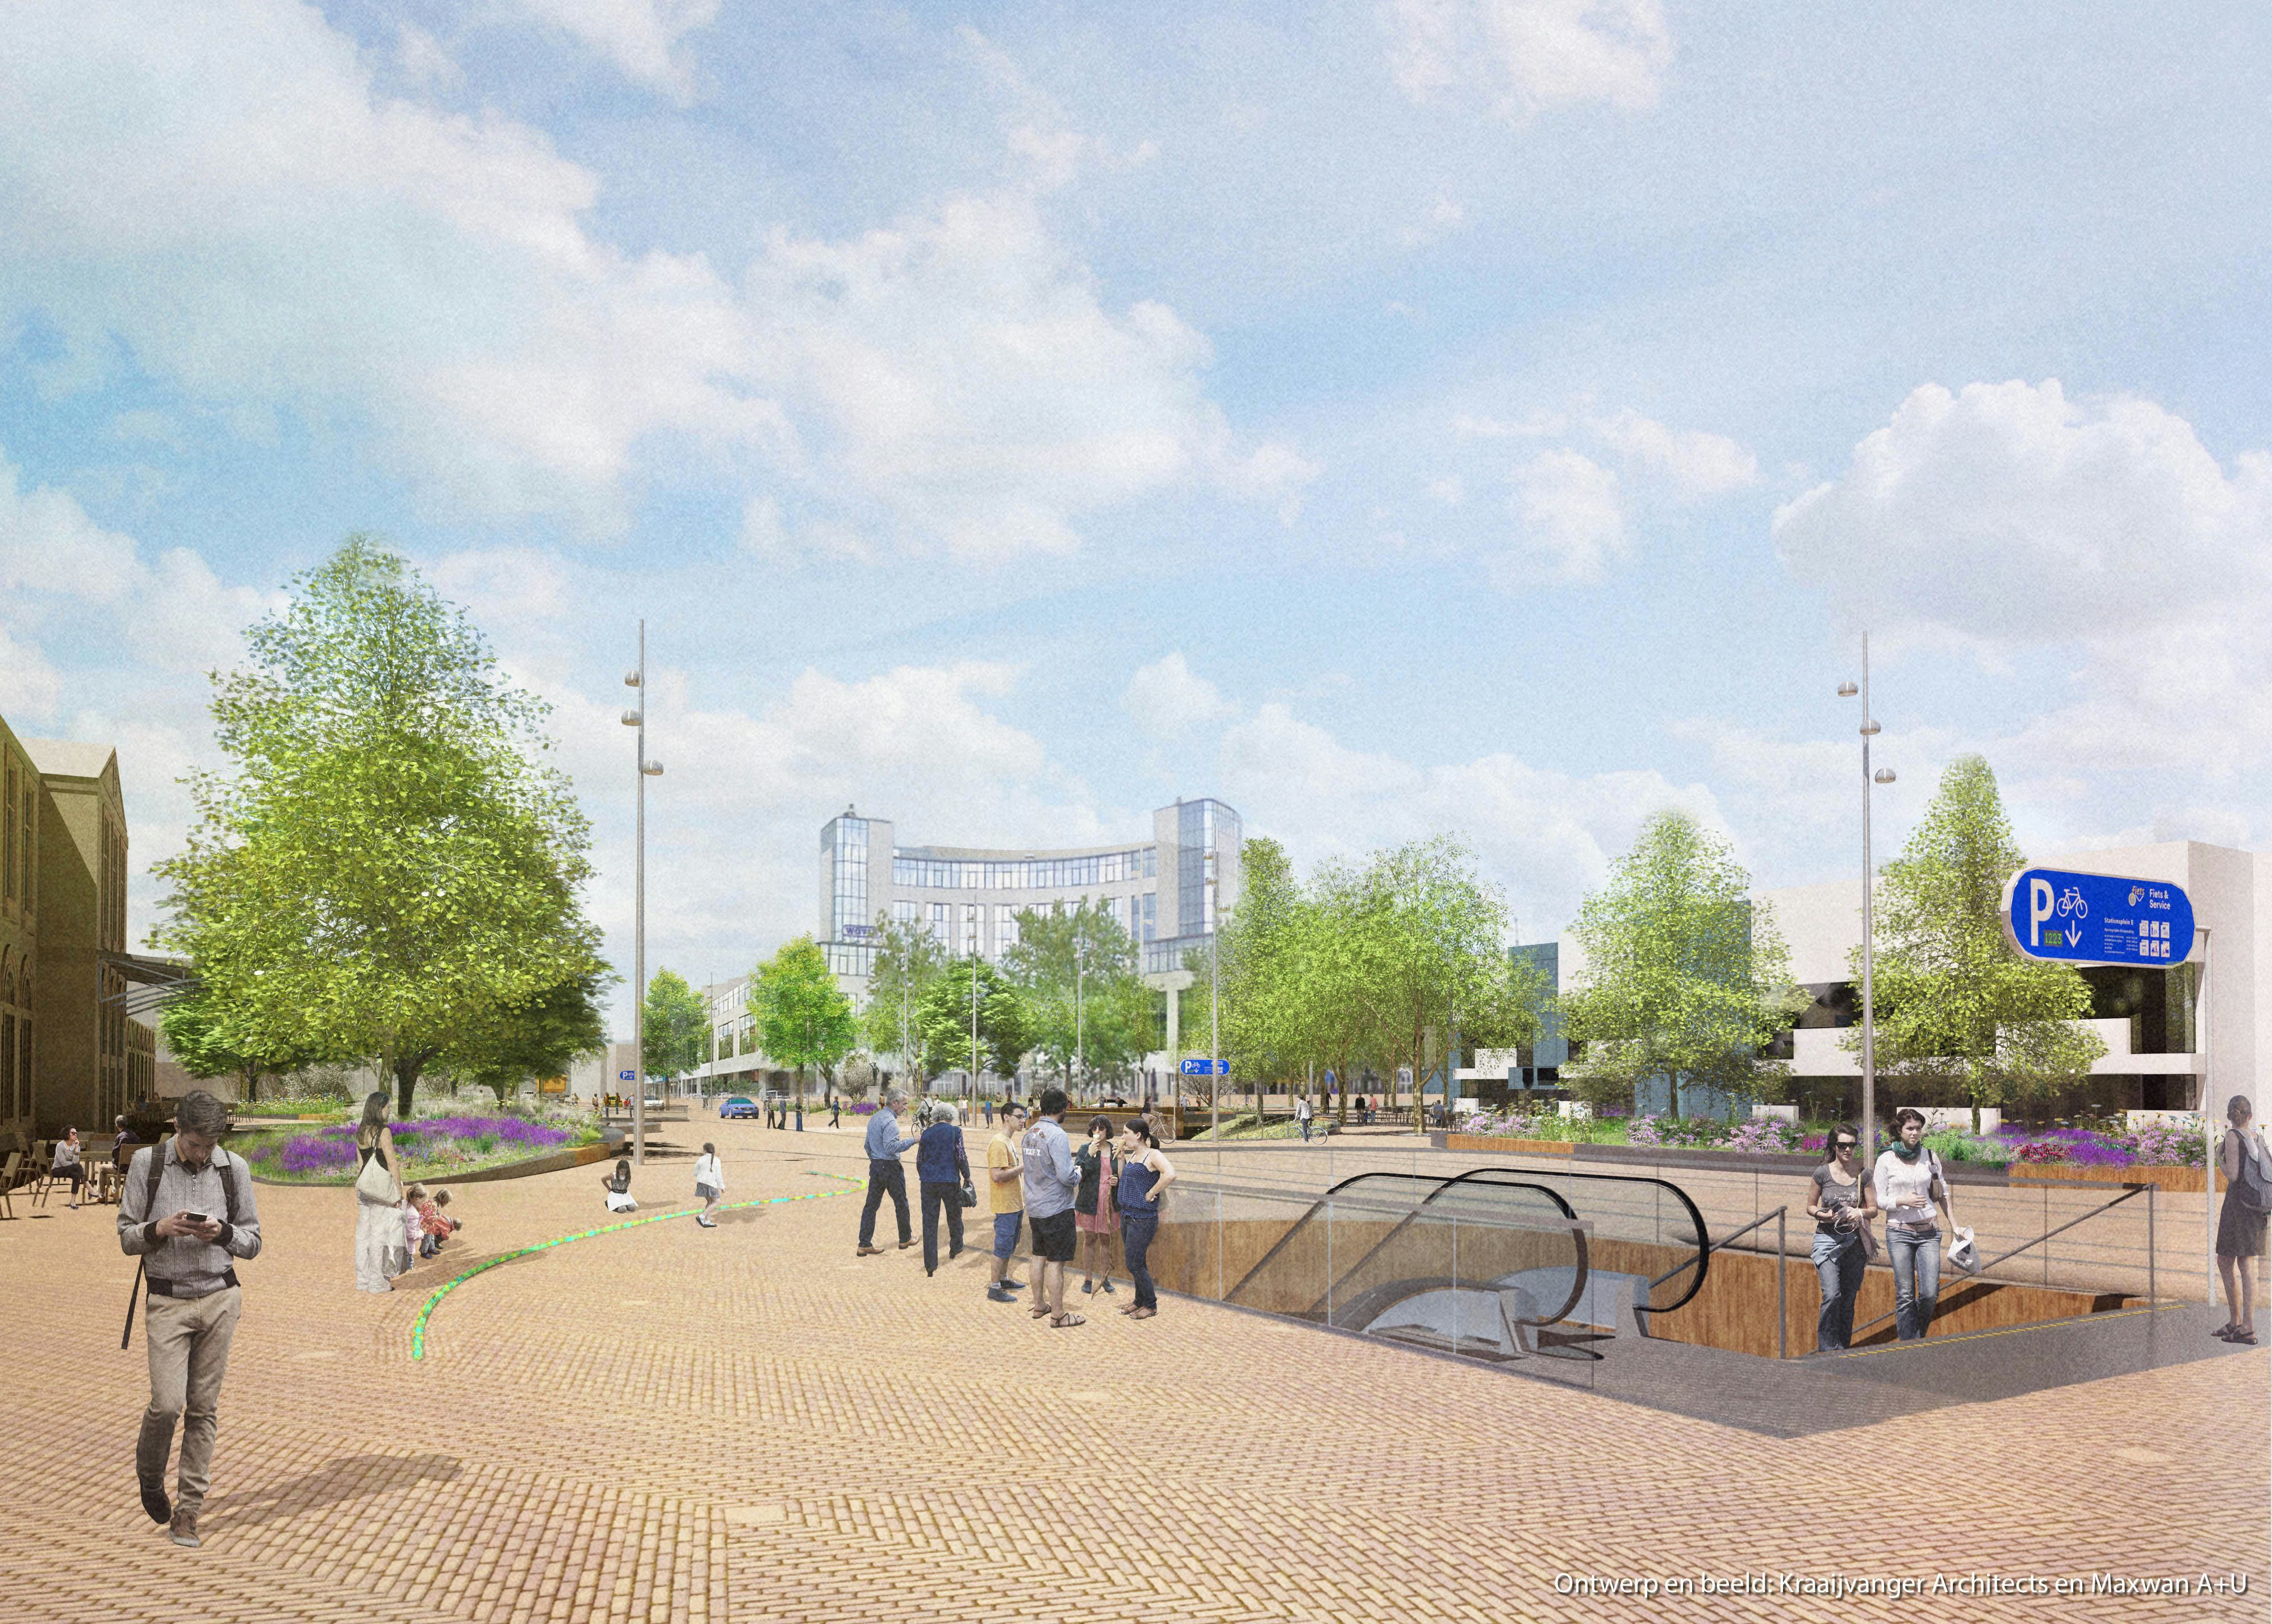 Ondergrondse fietsenstalling en herinrichting Stationsplein Zwolle naar ontwerp van Kraaijvanger Architects en Maxwan